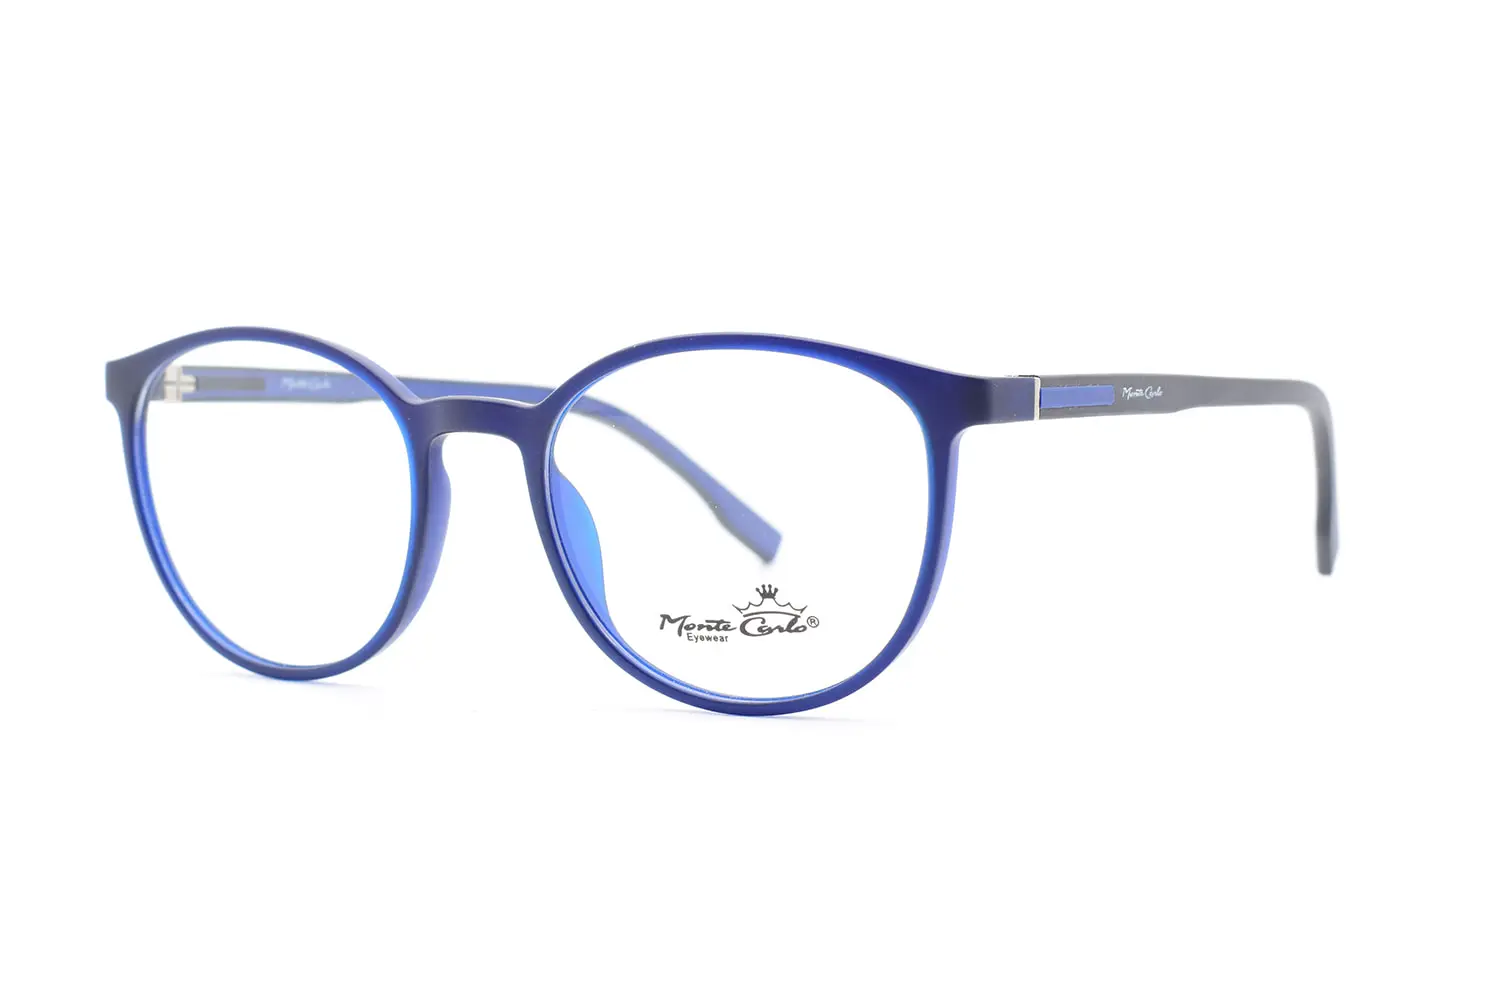 خرید عینک طبی Monte carlo mz19-26 c04